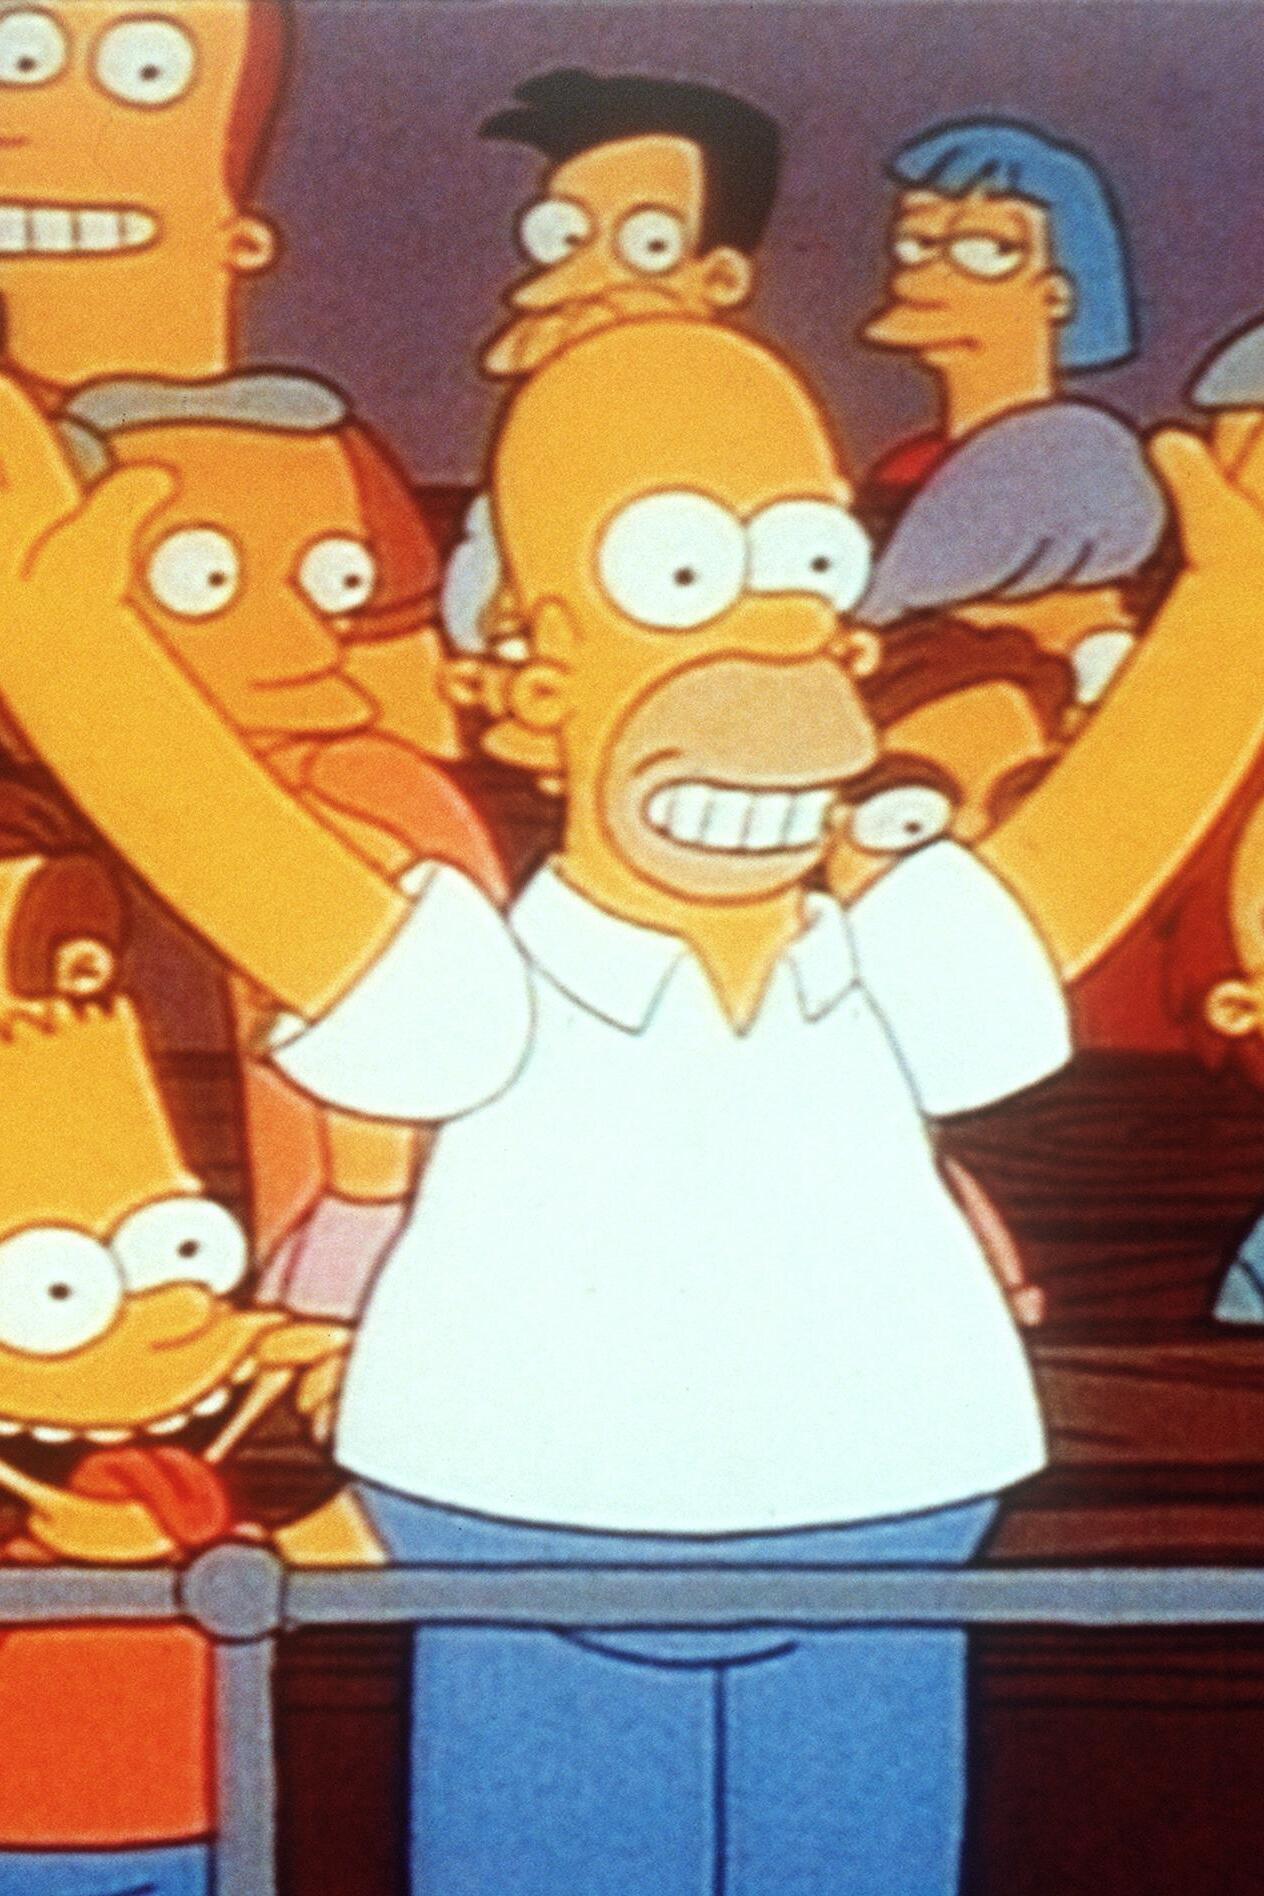 Les Simpson - Le dieu du stade